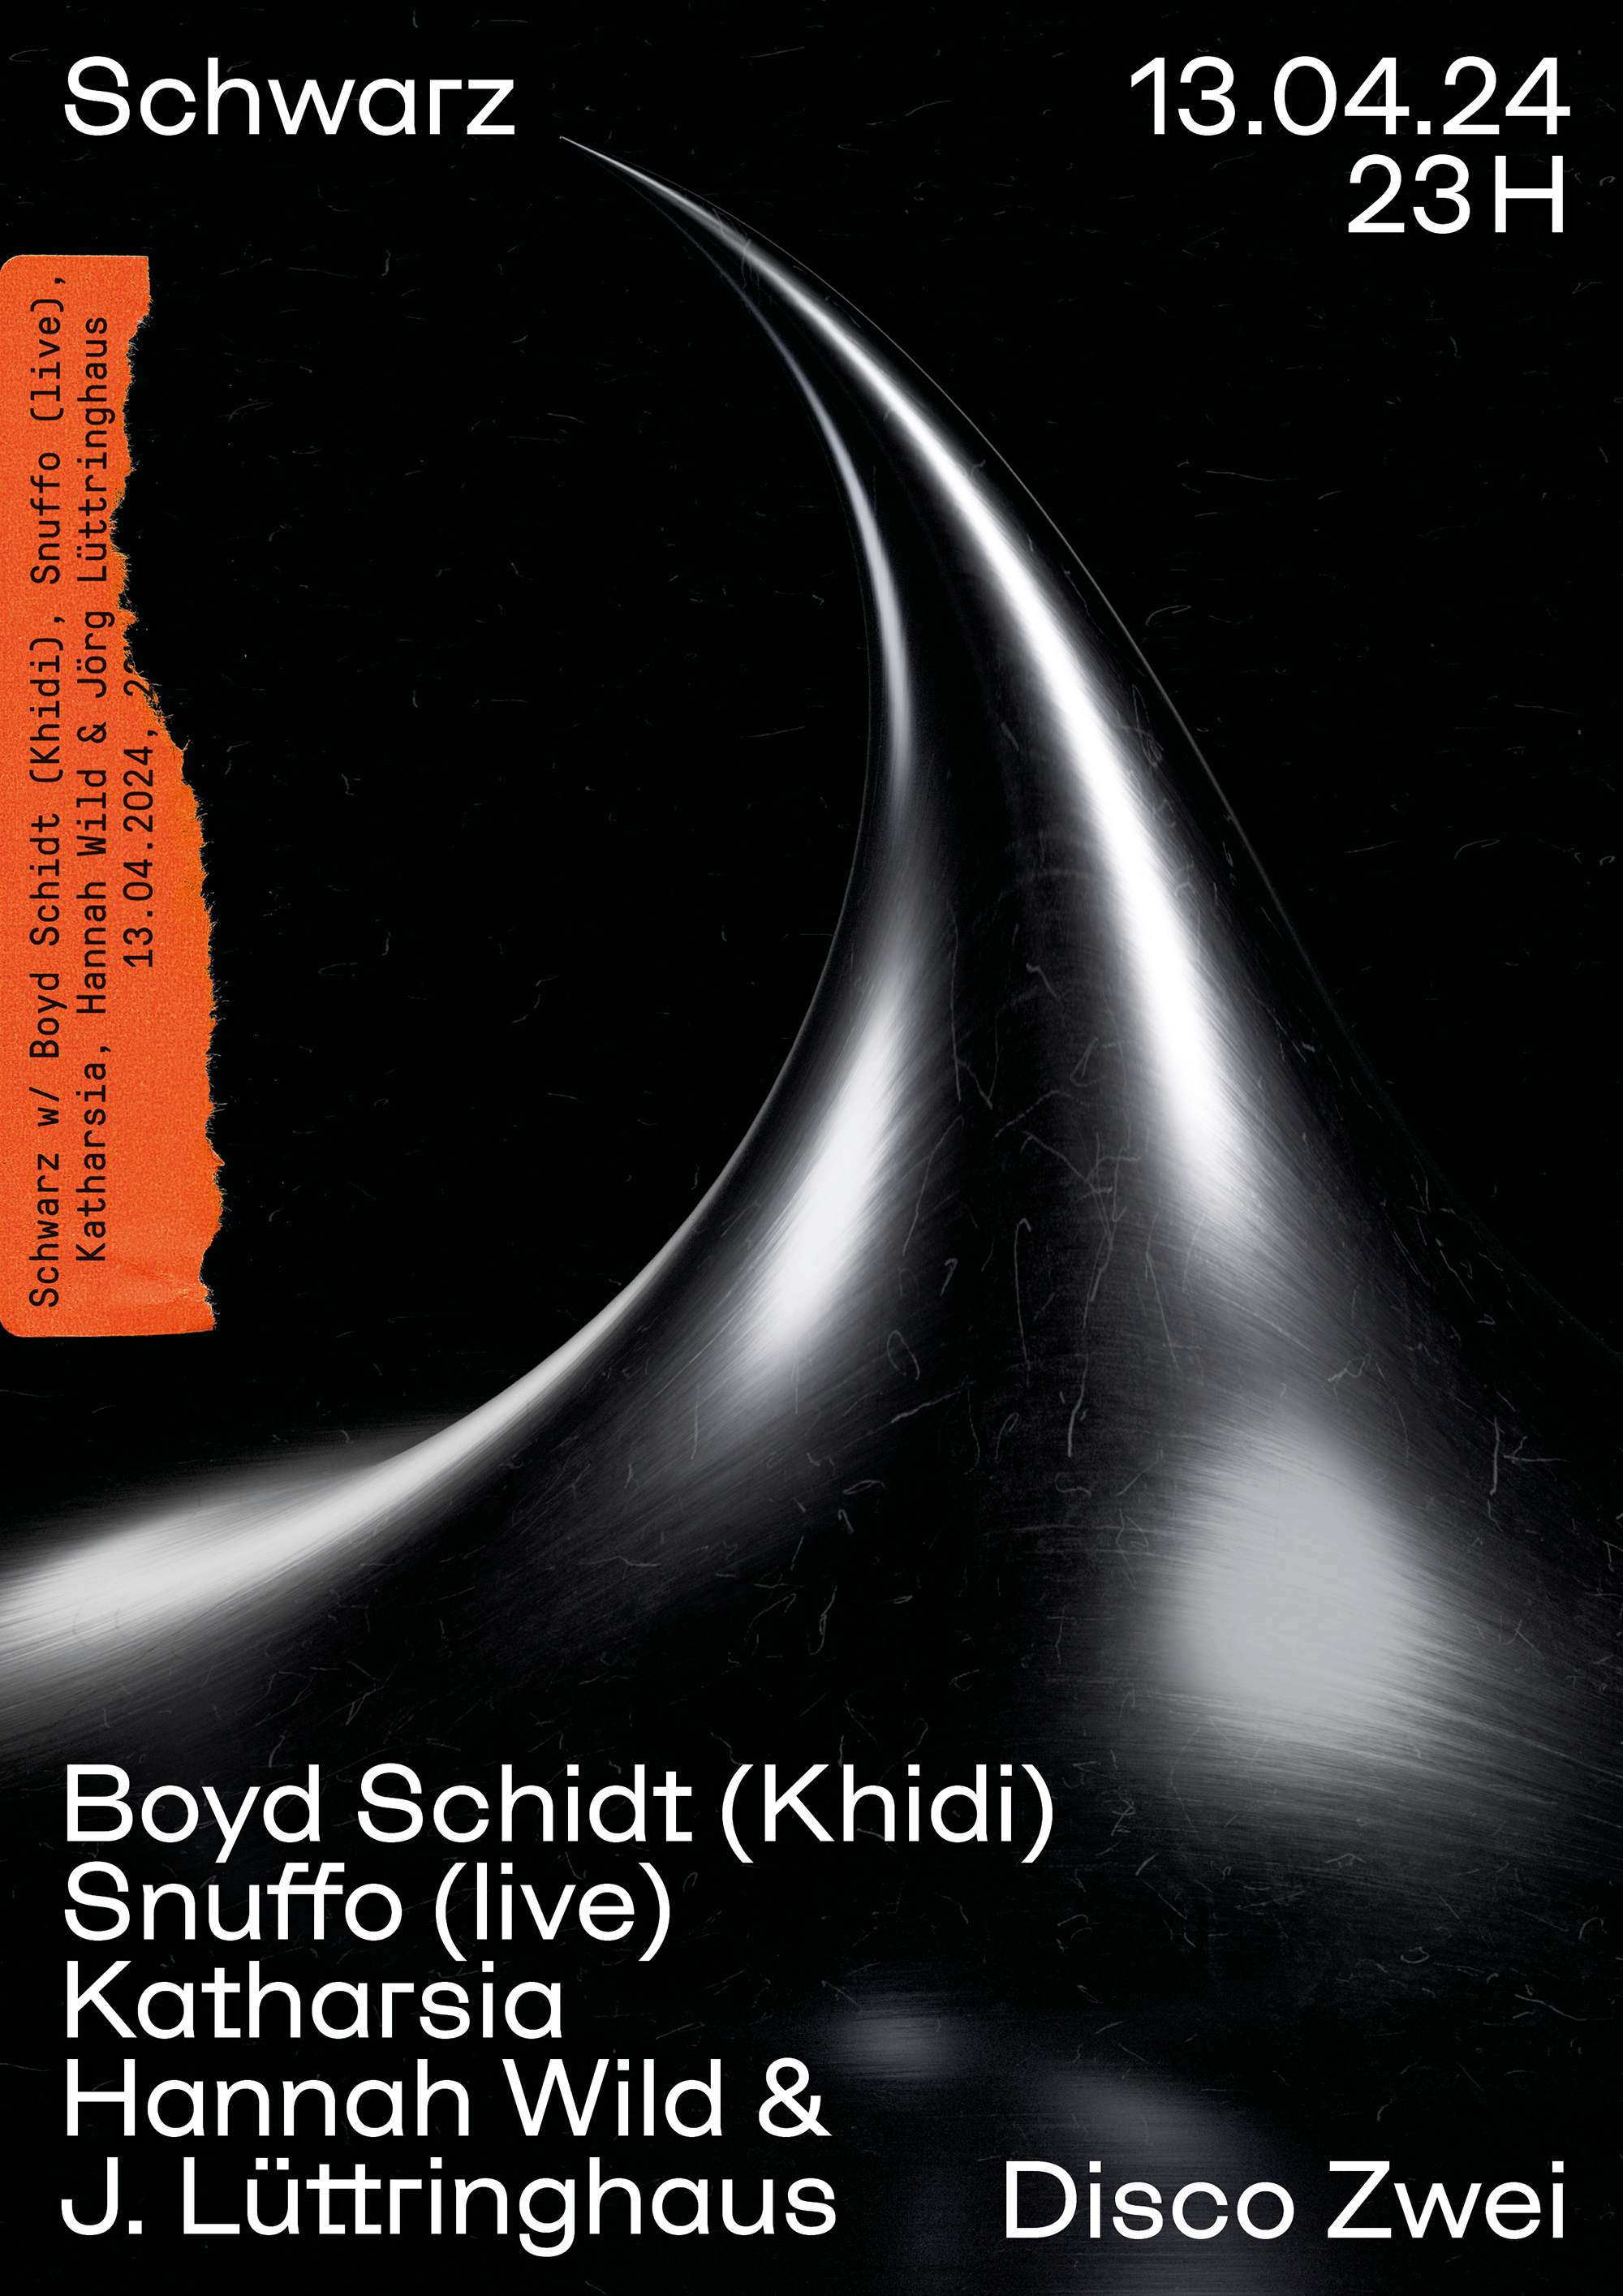 Schwarz with Boyd Schidt, Snuffo (live), Katharsia, Hannah Wild & Jörg Lüttringhaus - フライヤー表